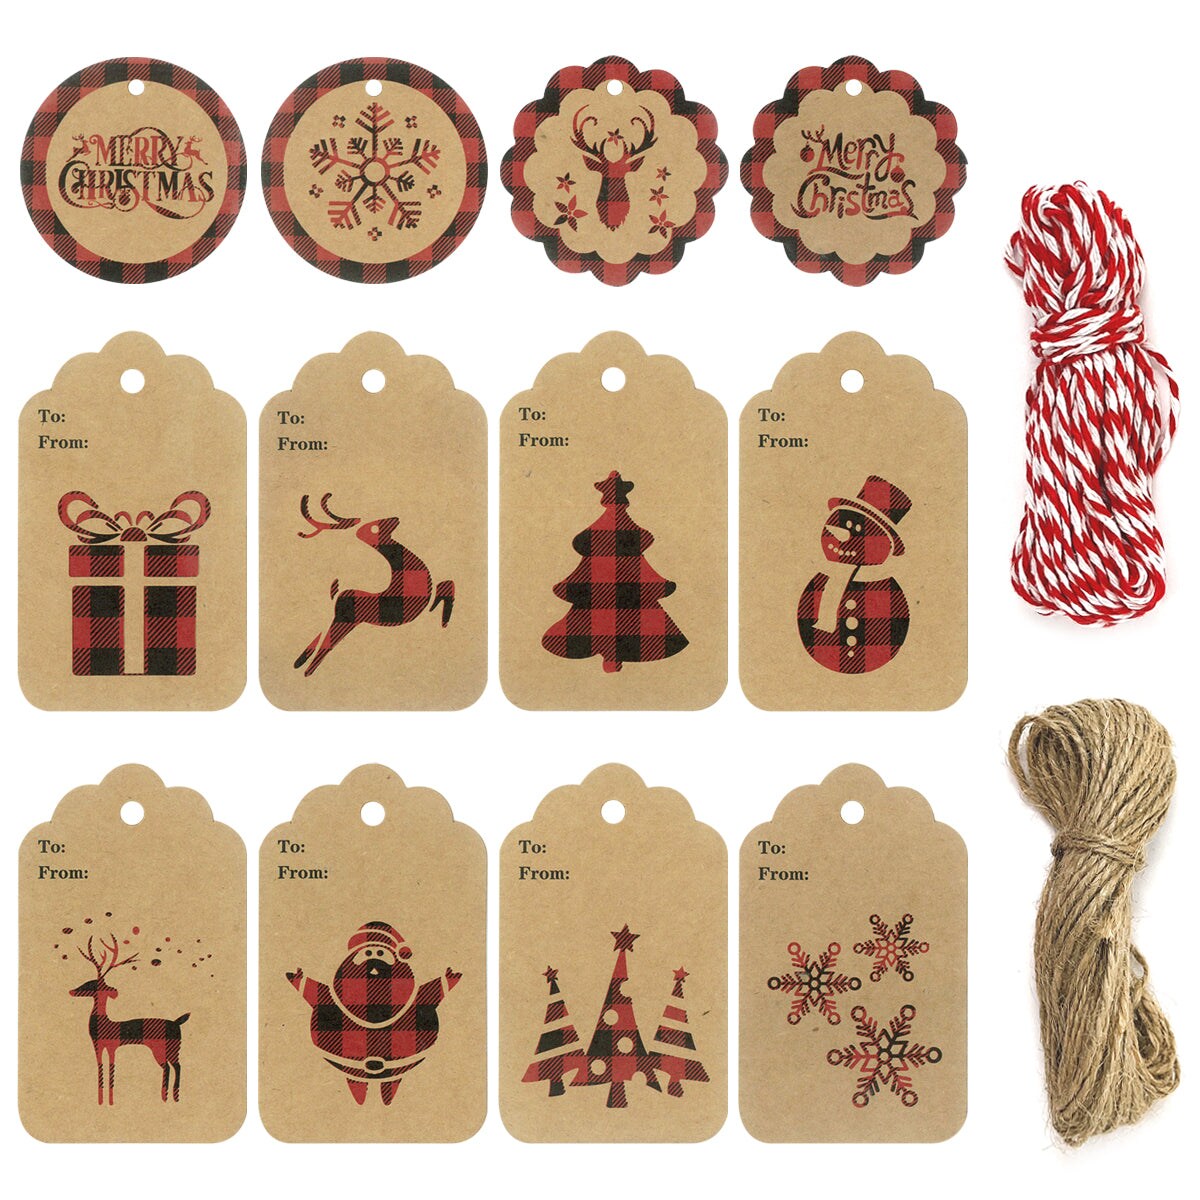  Christmas Gift Tags for Presents Christmas Labels  Personalised,50 pcs Xmas Gift Tags,Christmas Gift Tags with  String,Christmas Tags for Presents (Multicolor) : Health & Household